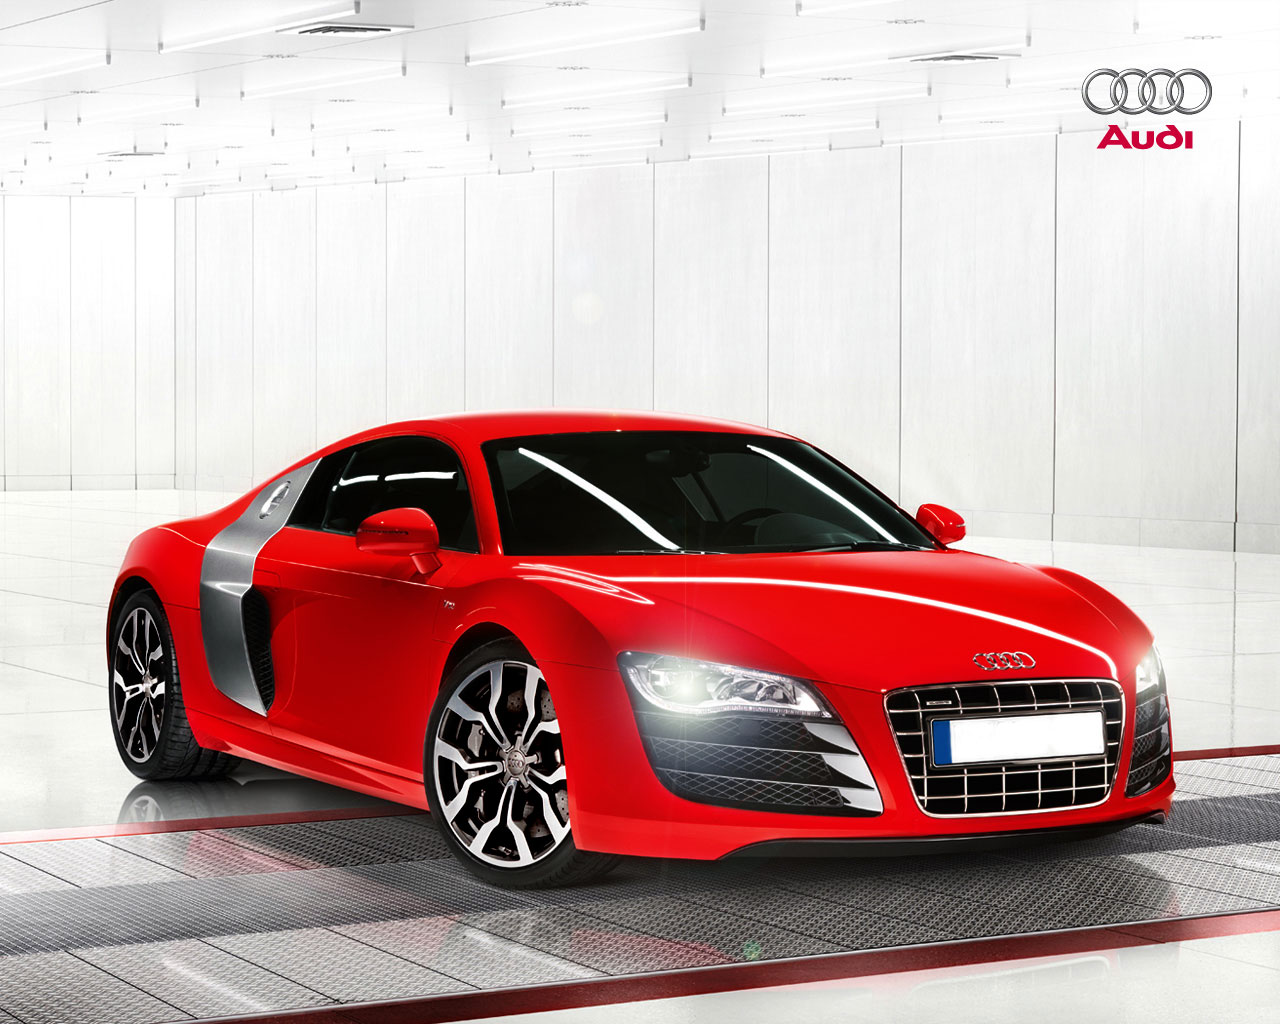 Descarga gratuita de fondo de pantalla para móvil de Audi R8, Audi, Vehículos.